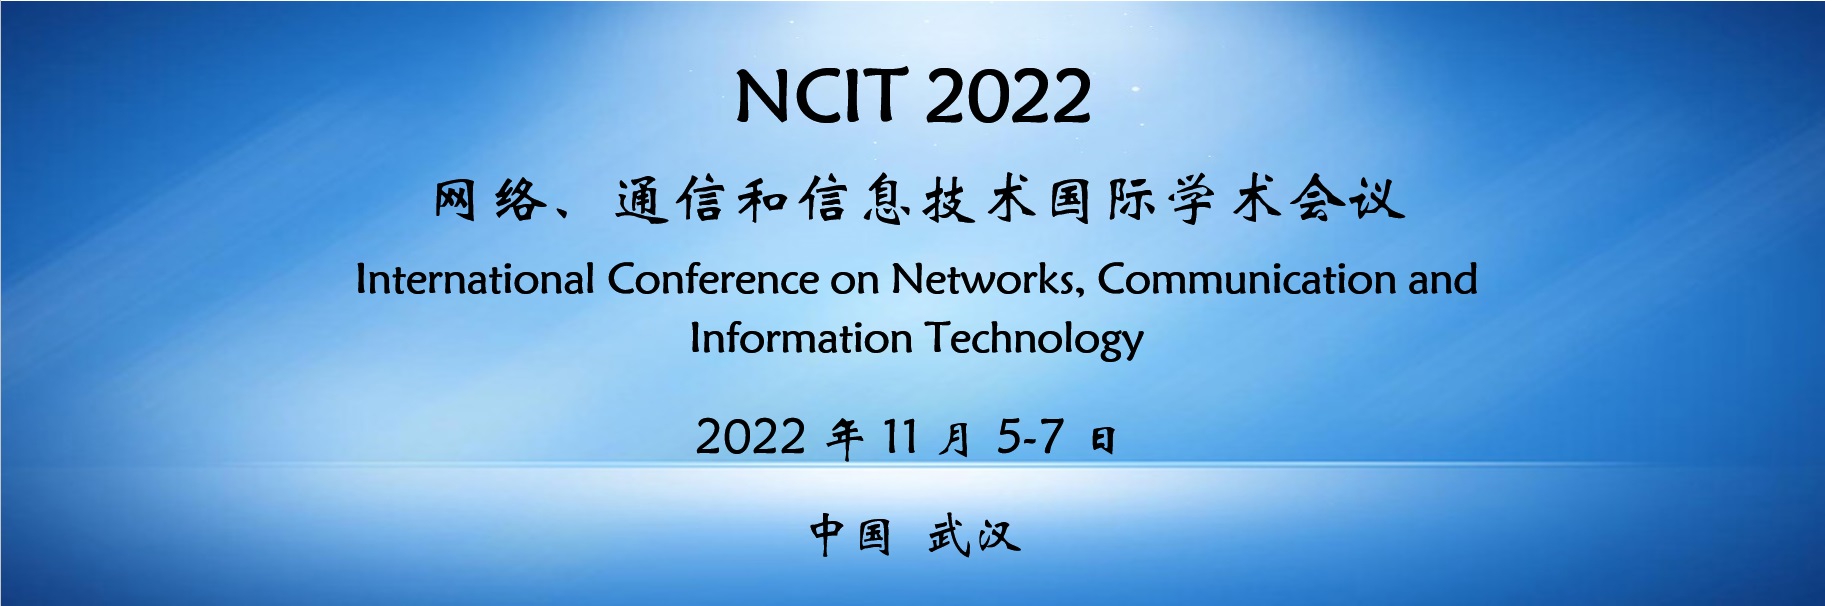 网络、通信和信息技术国际学术会议